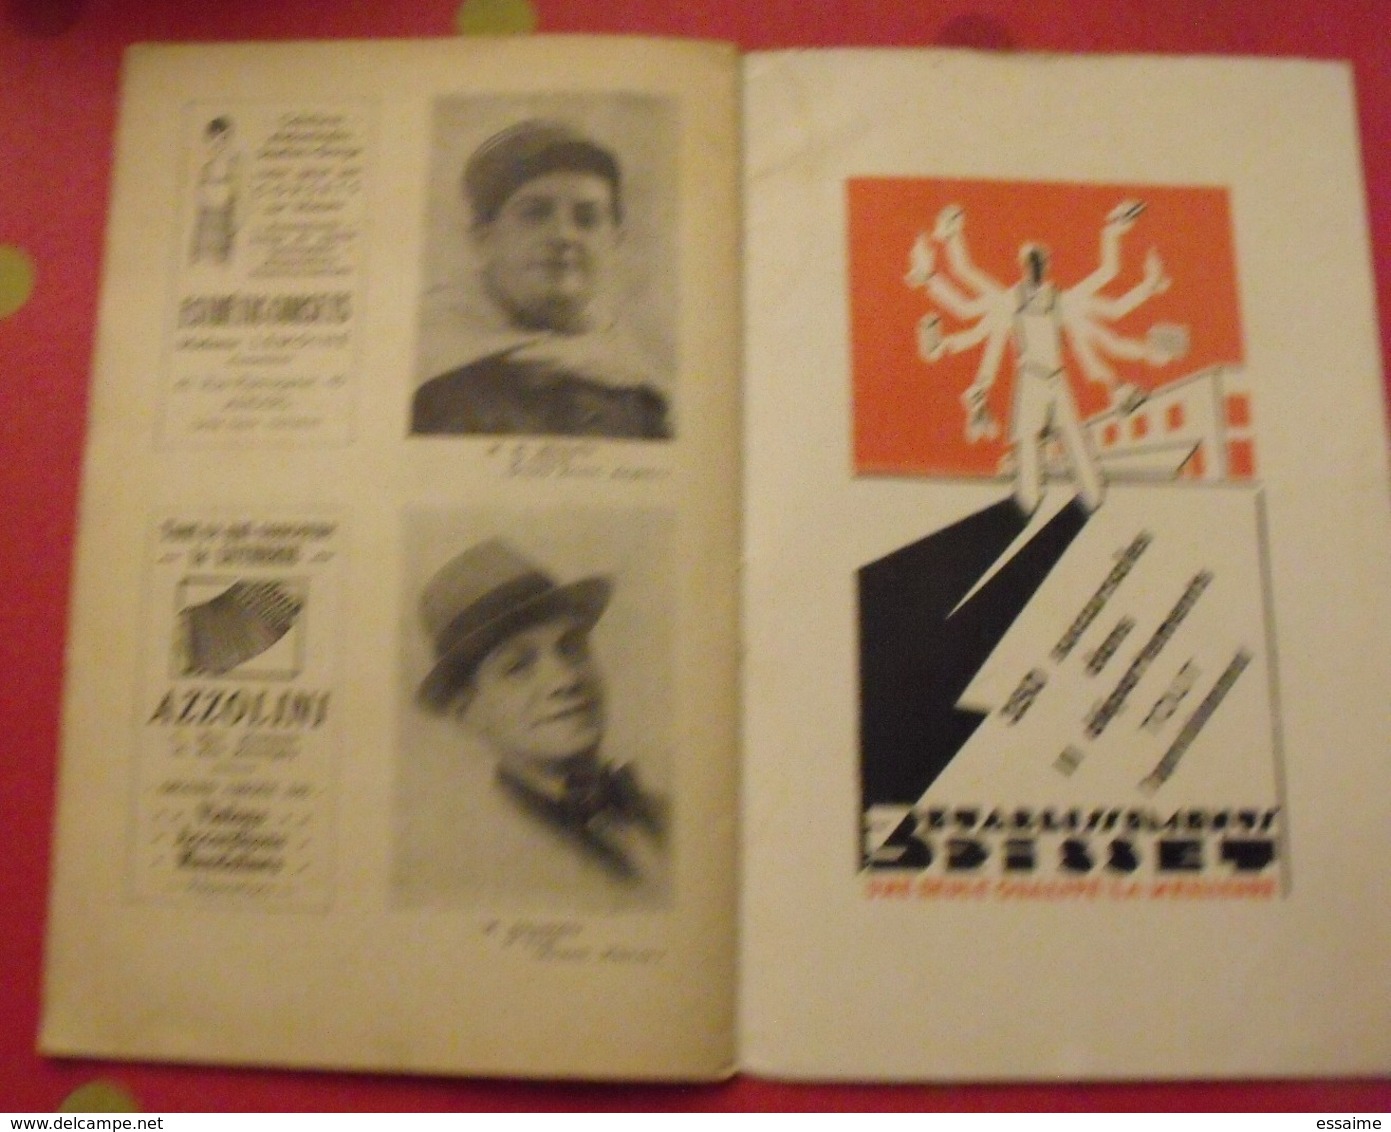 Angers. grand théâtre saison 1937-38. normandie. 36 pages. photos des artistes. publicités locales